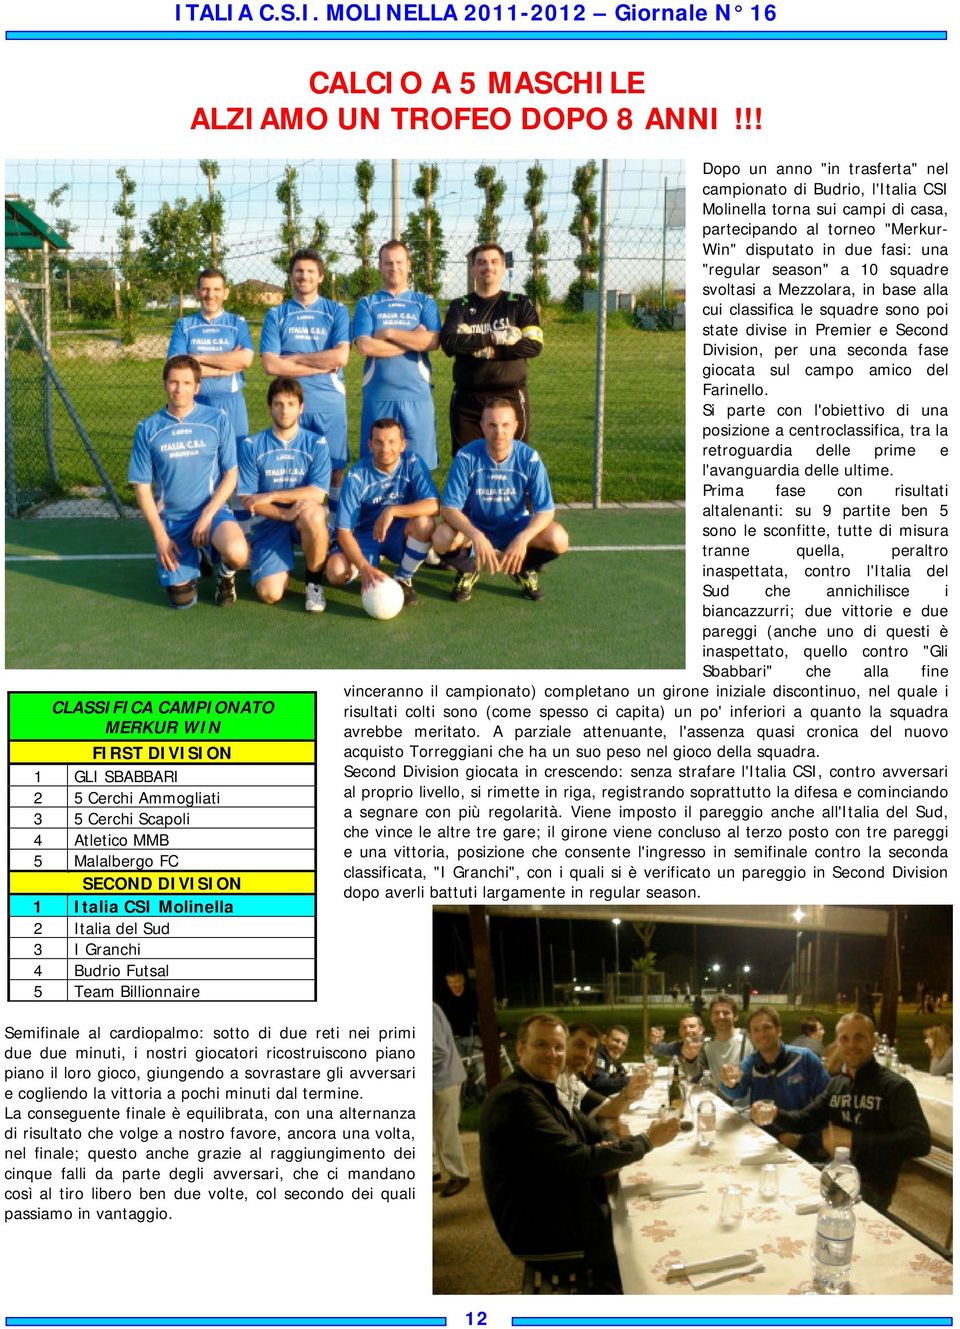 Budrio Futsal 5 Team Billionnaire Dopo un anno "in trasferta" nel campionato di Budrio, l'italia CSI Molinella torna sui campi di casa, partecipando al torneo "Merkur- Win" disputato in due fasi: una